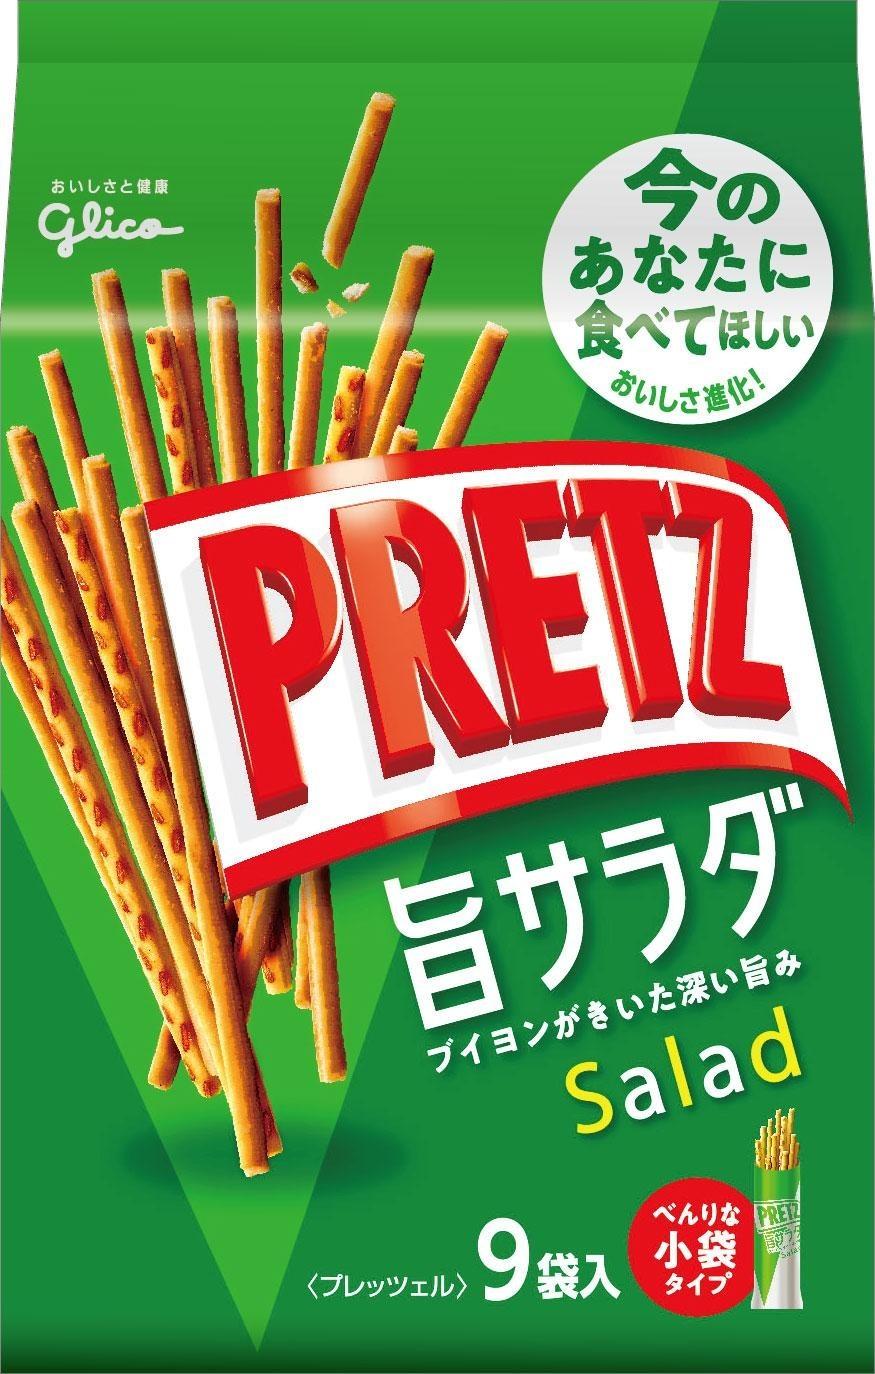 glico-pretz-salad-biscuit-sticks-bag